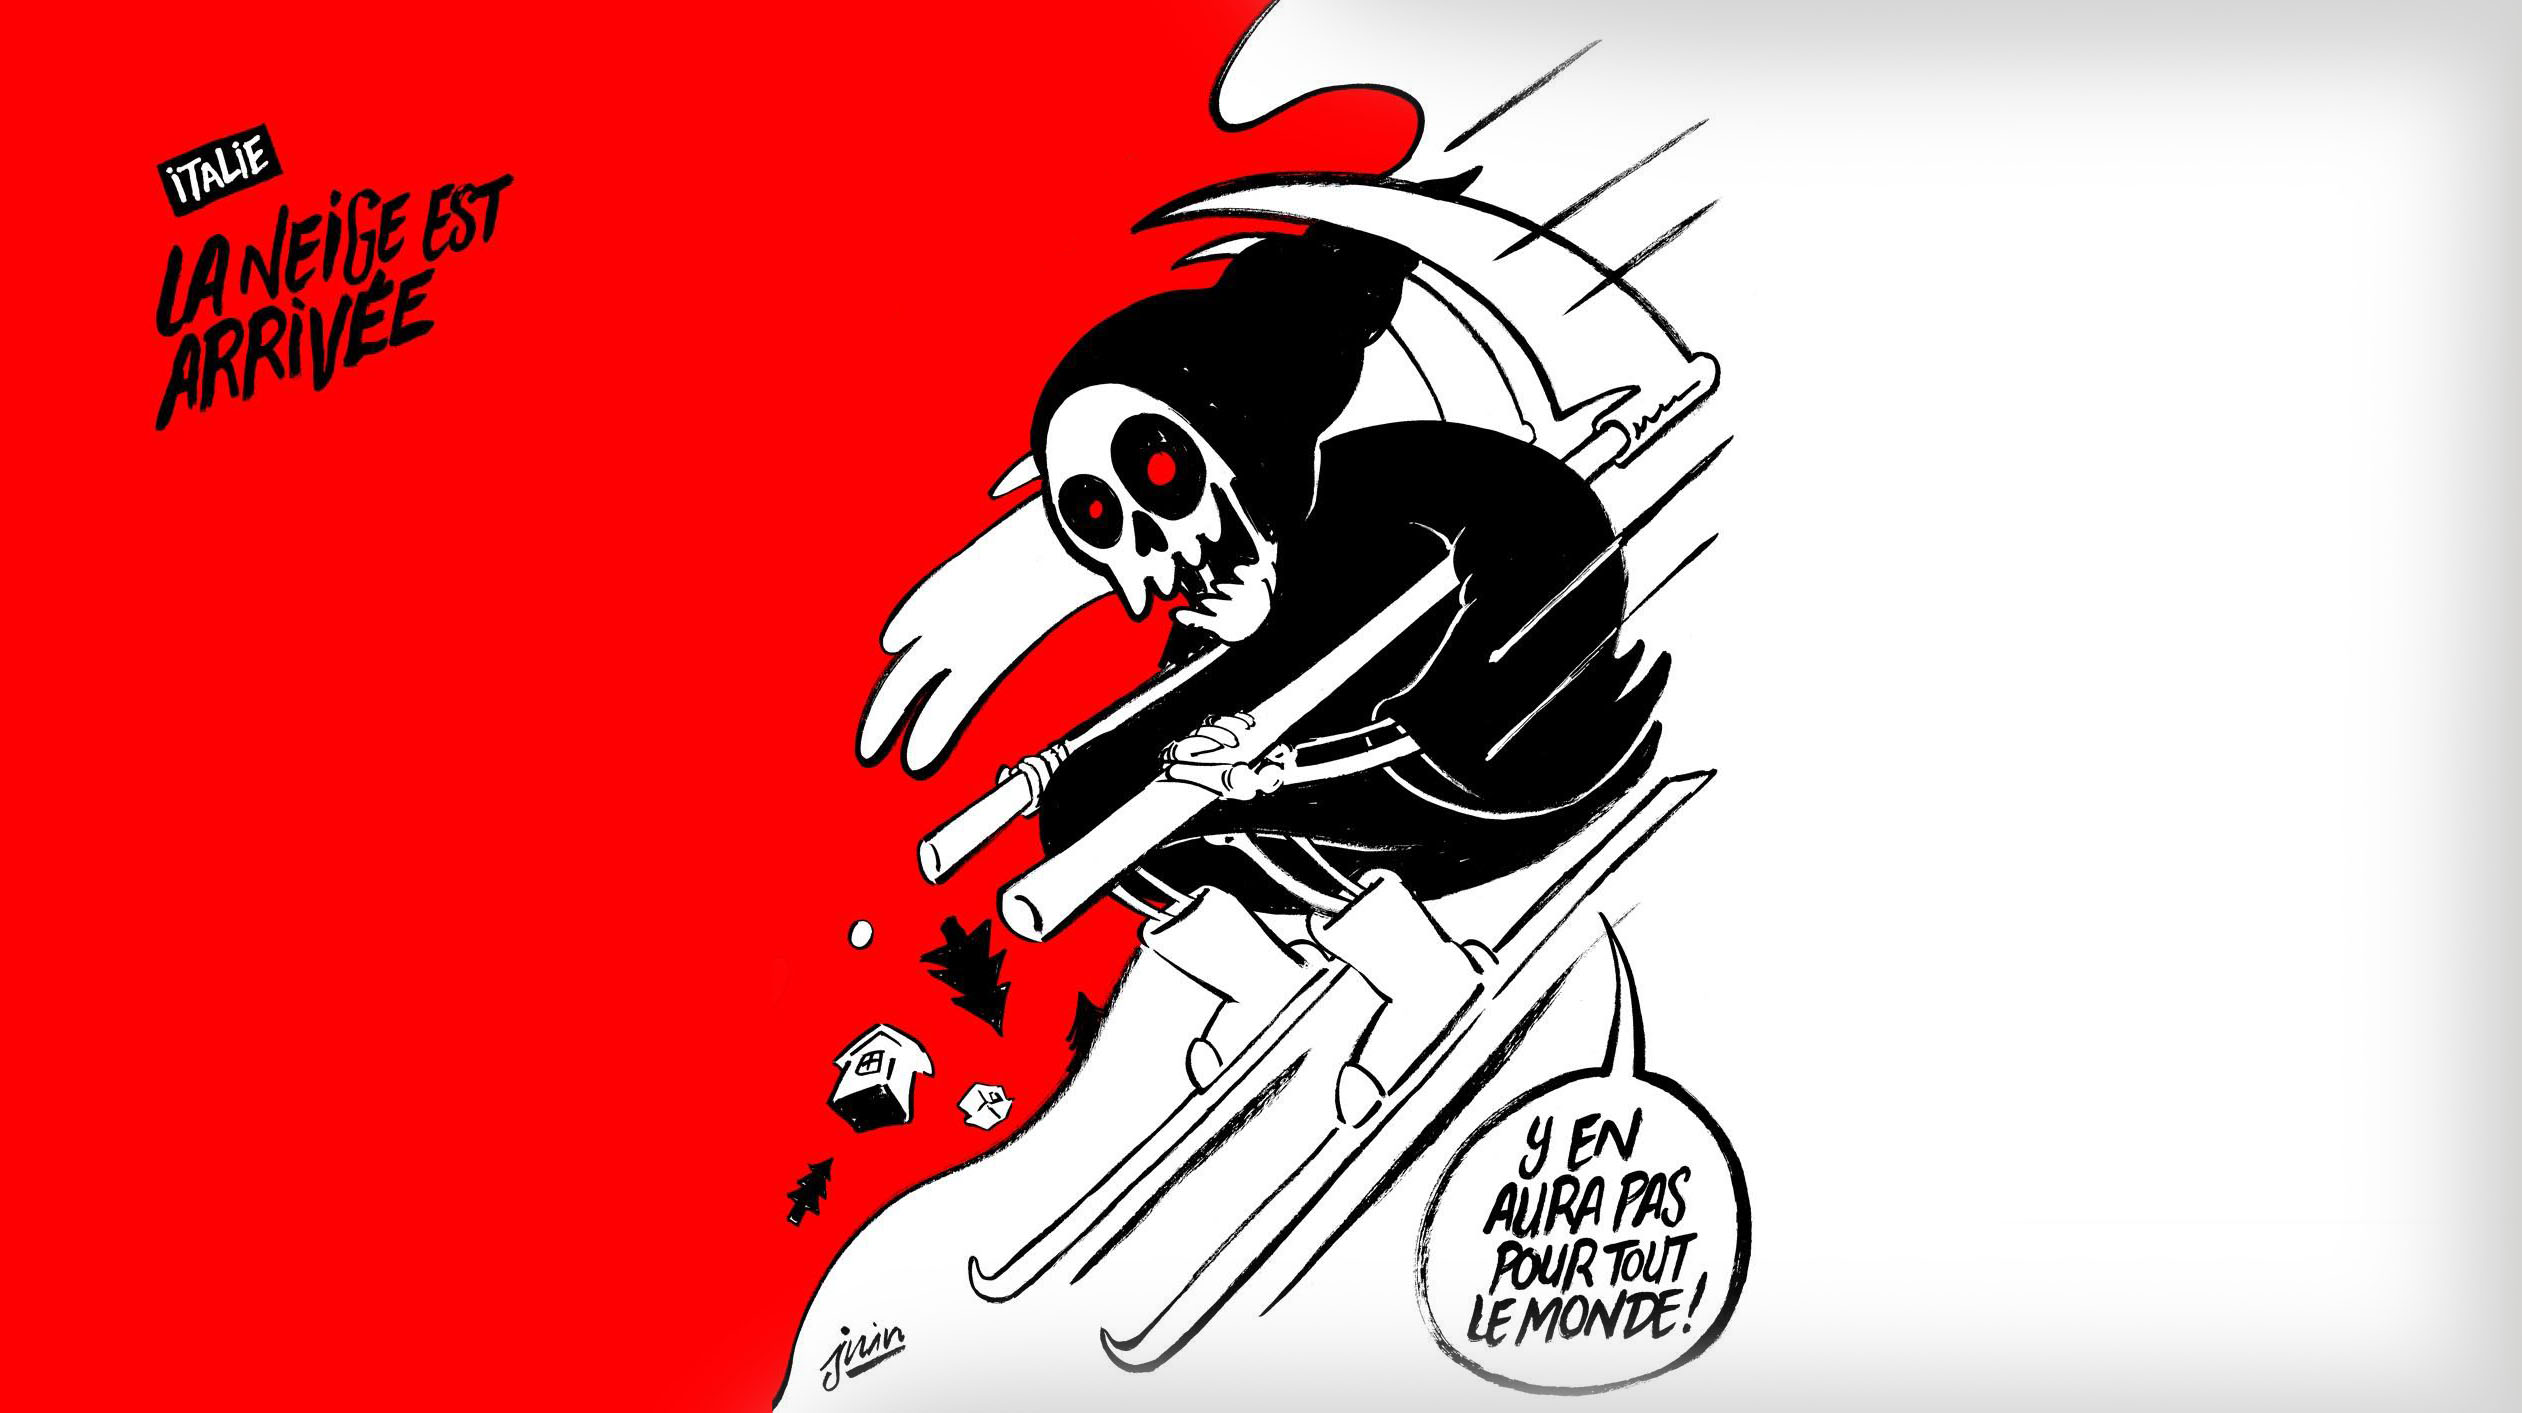 Terremoti e vignette: la satira di Charlie Hebdo che offende